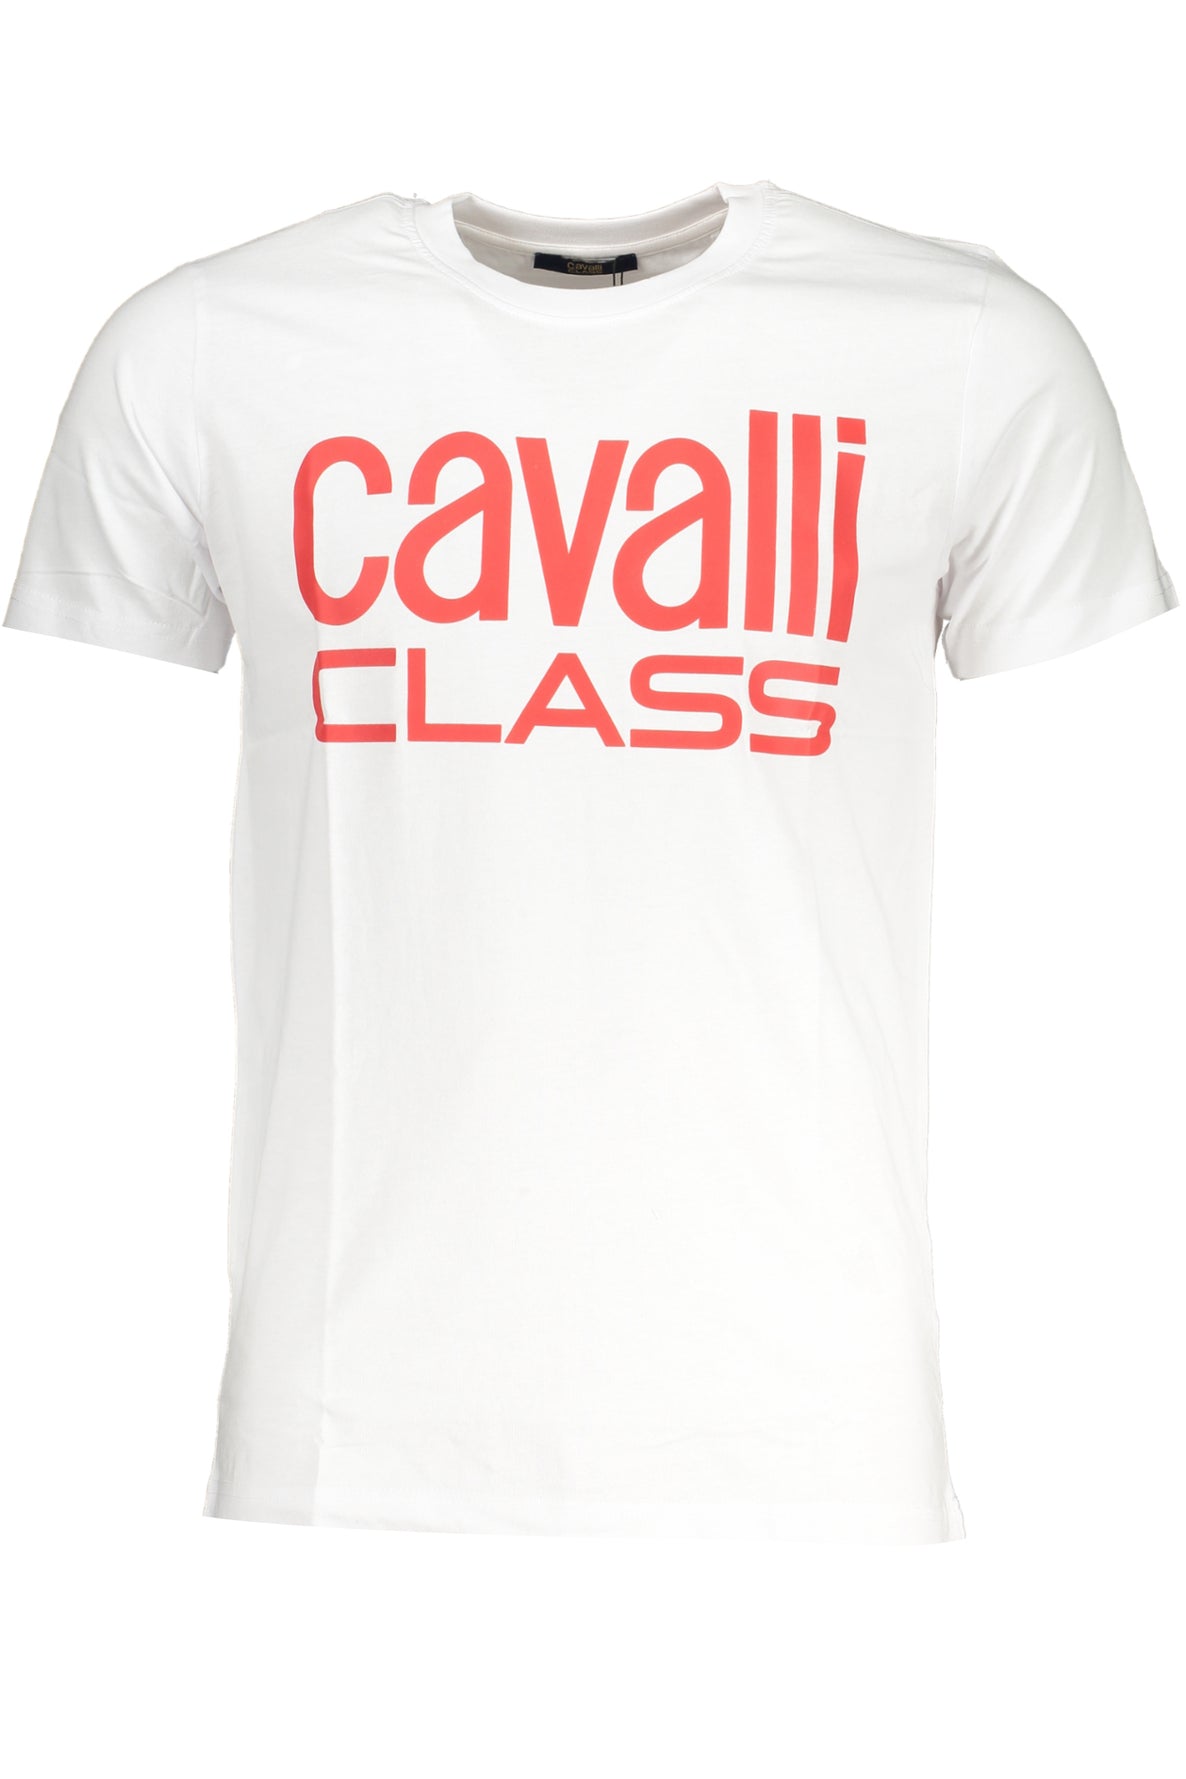 CAVALLI CLASS